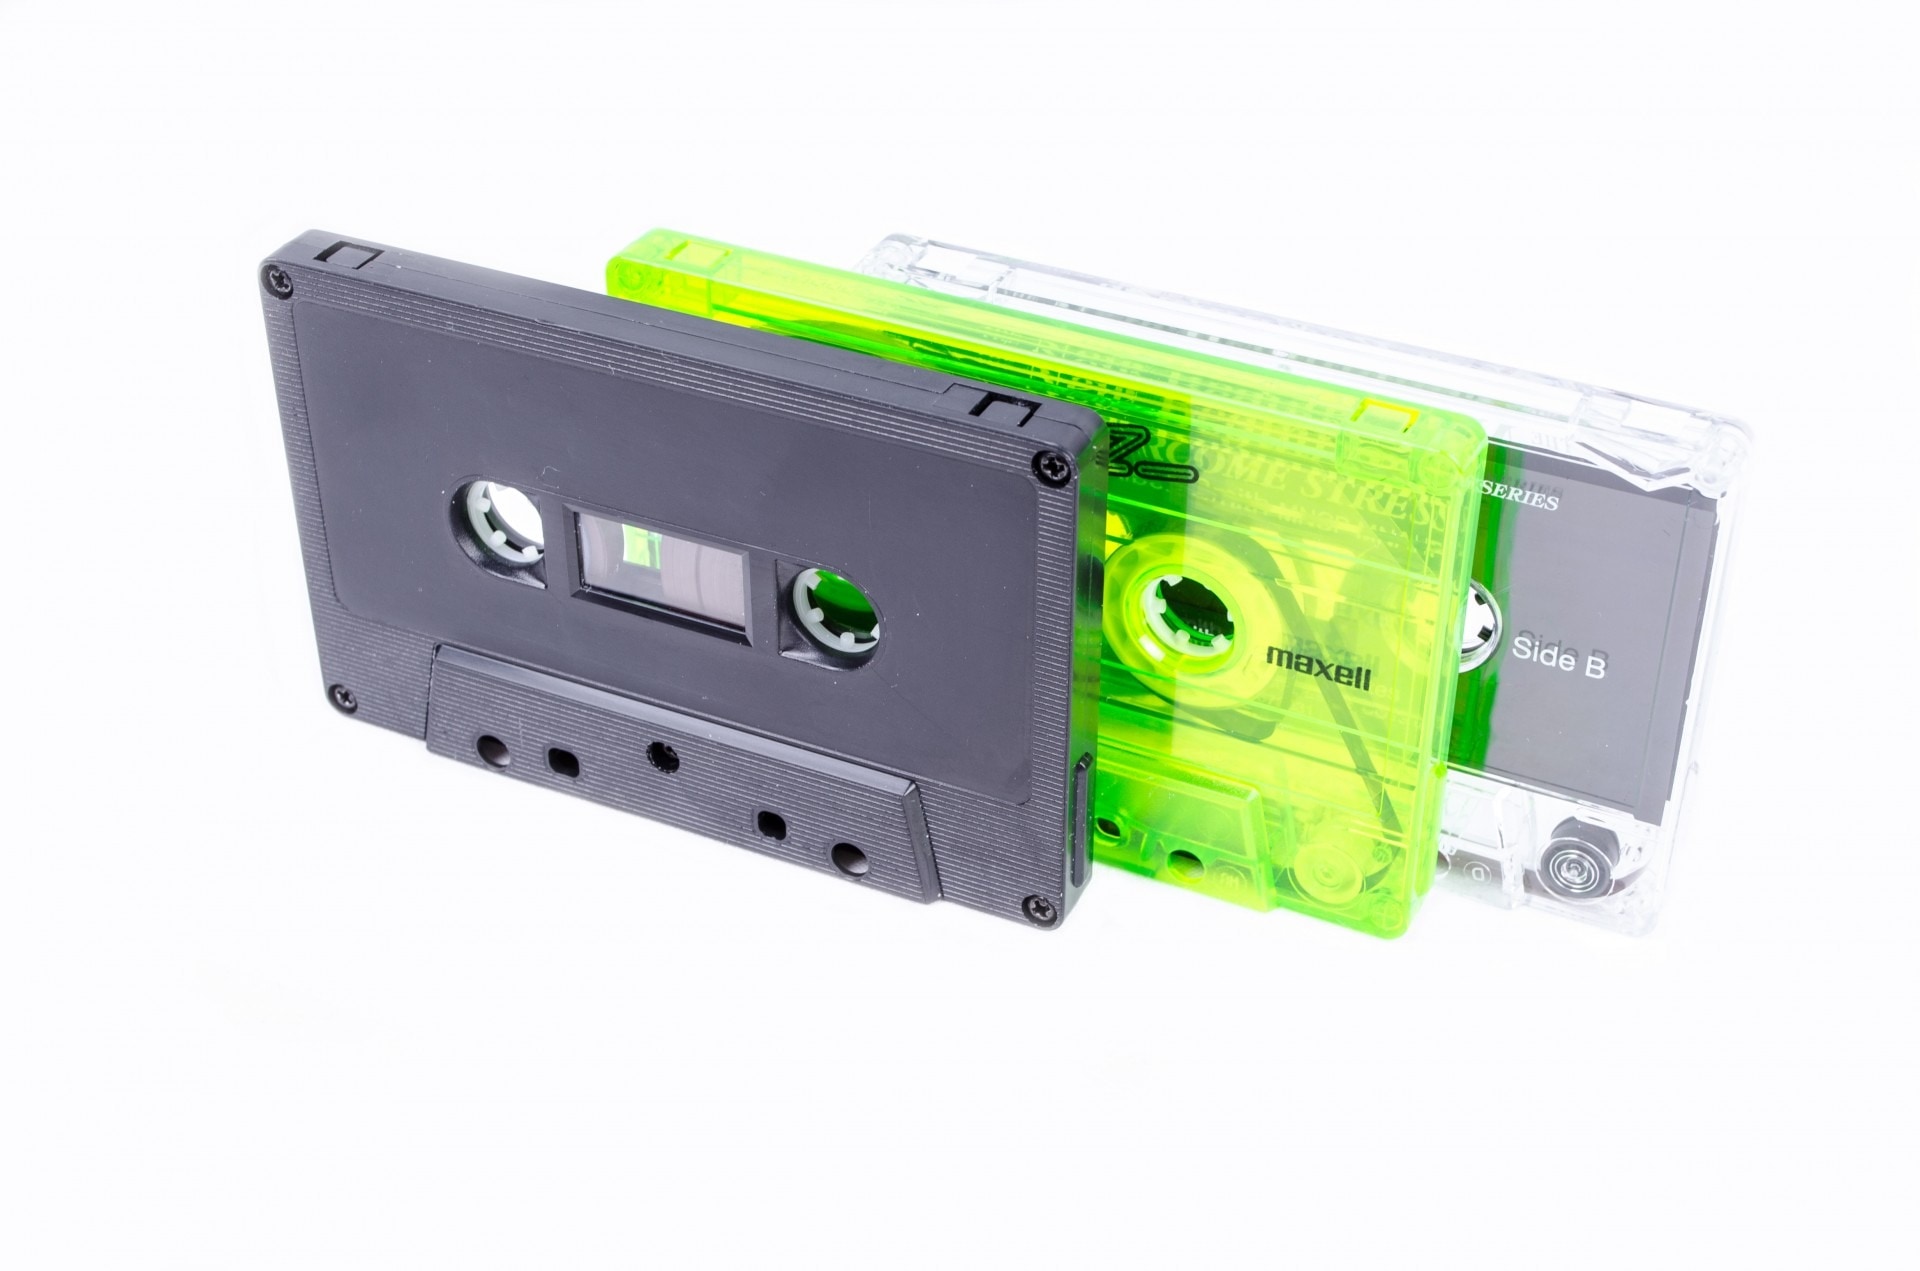 3 cassette tape